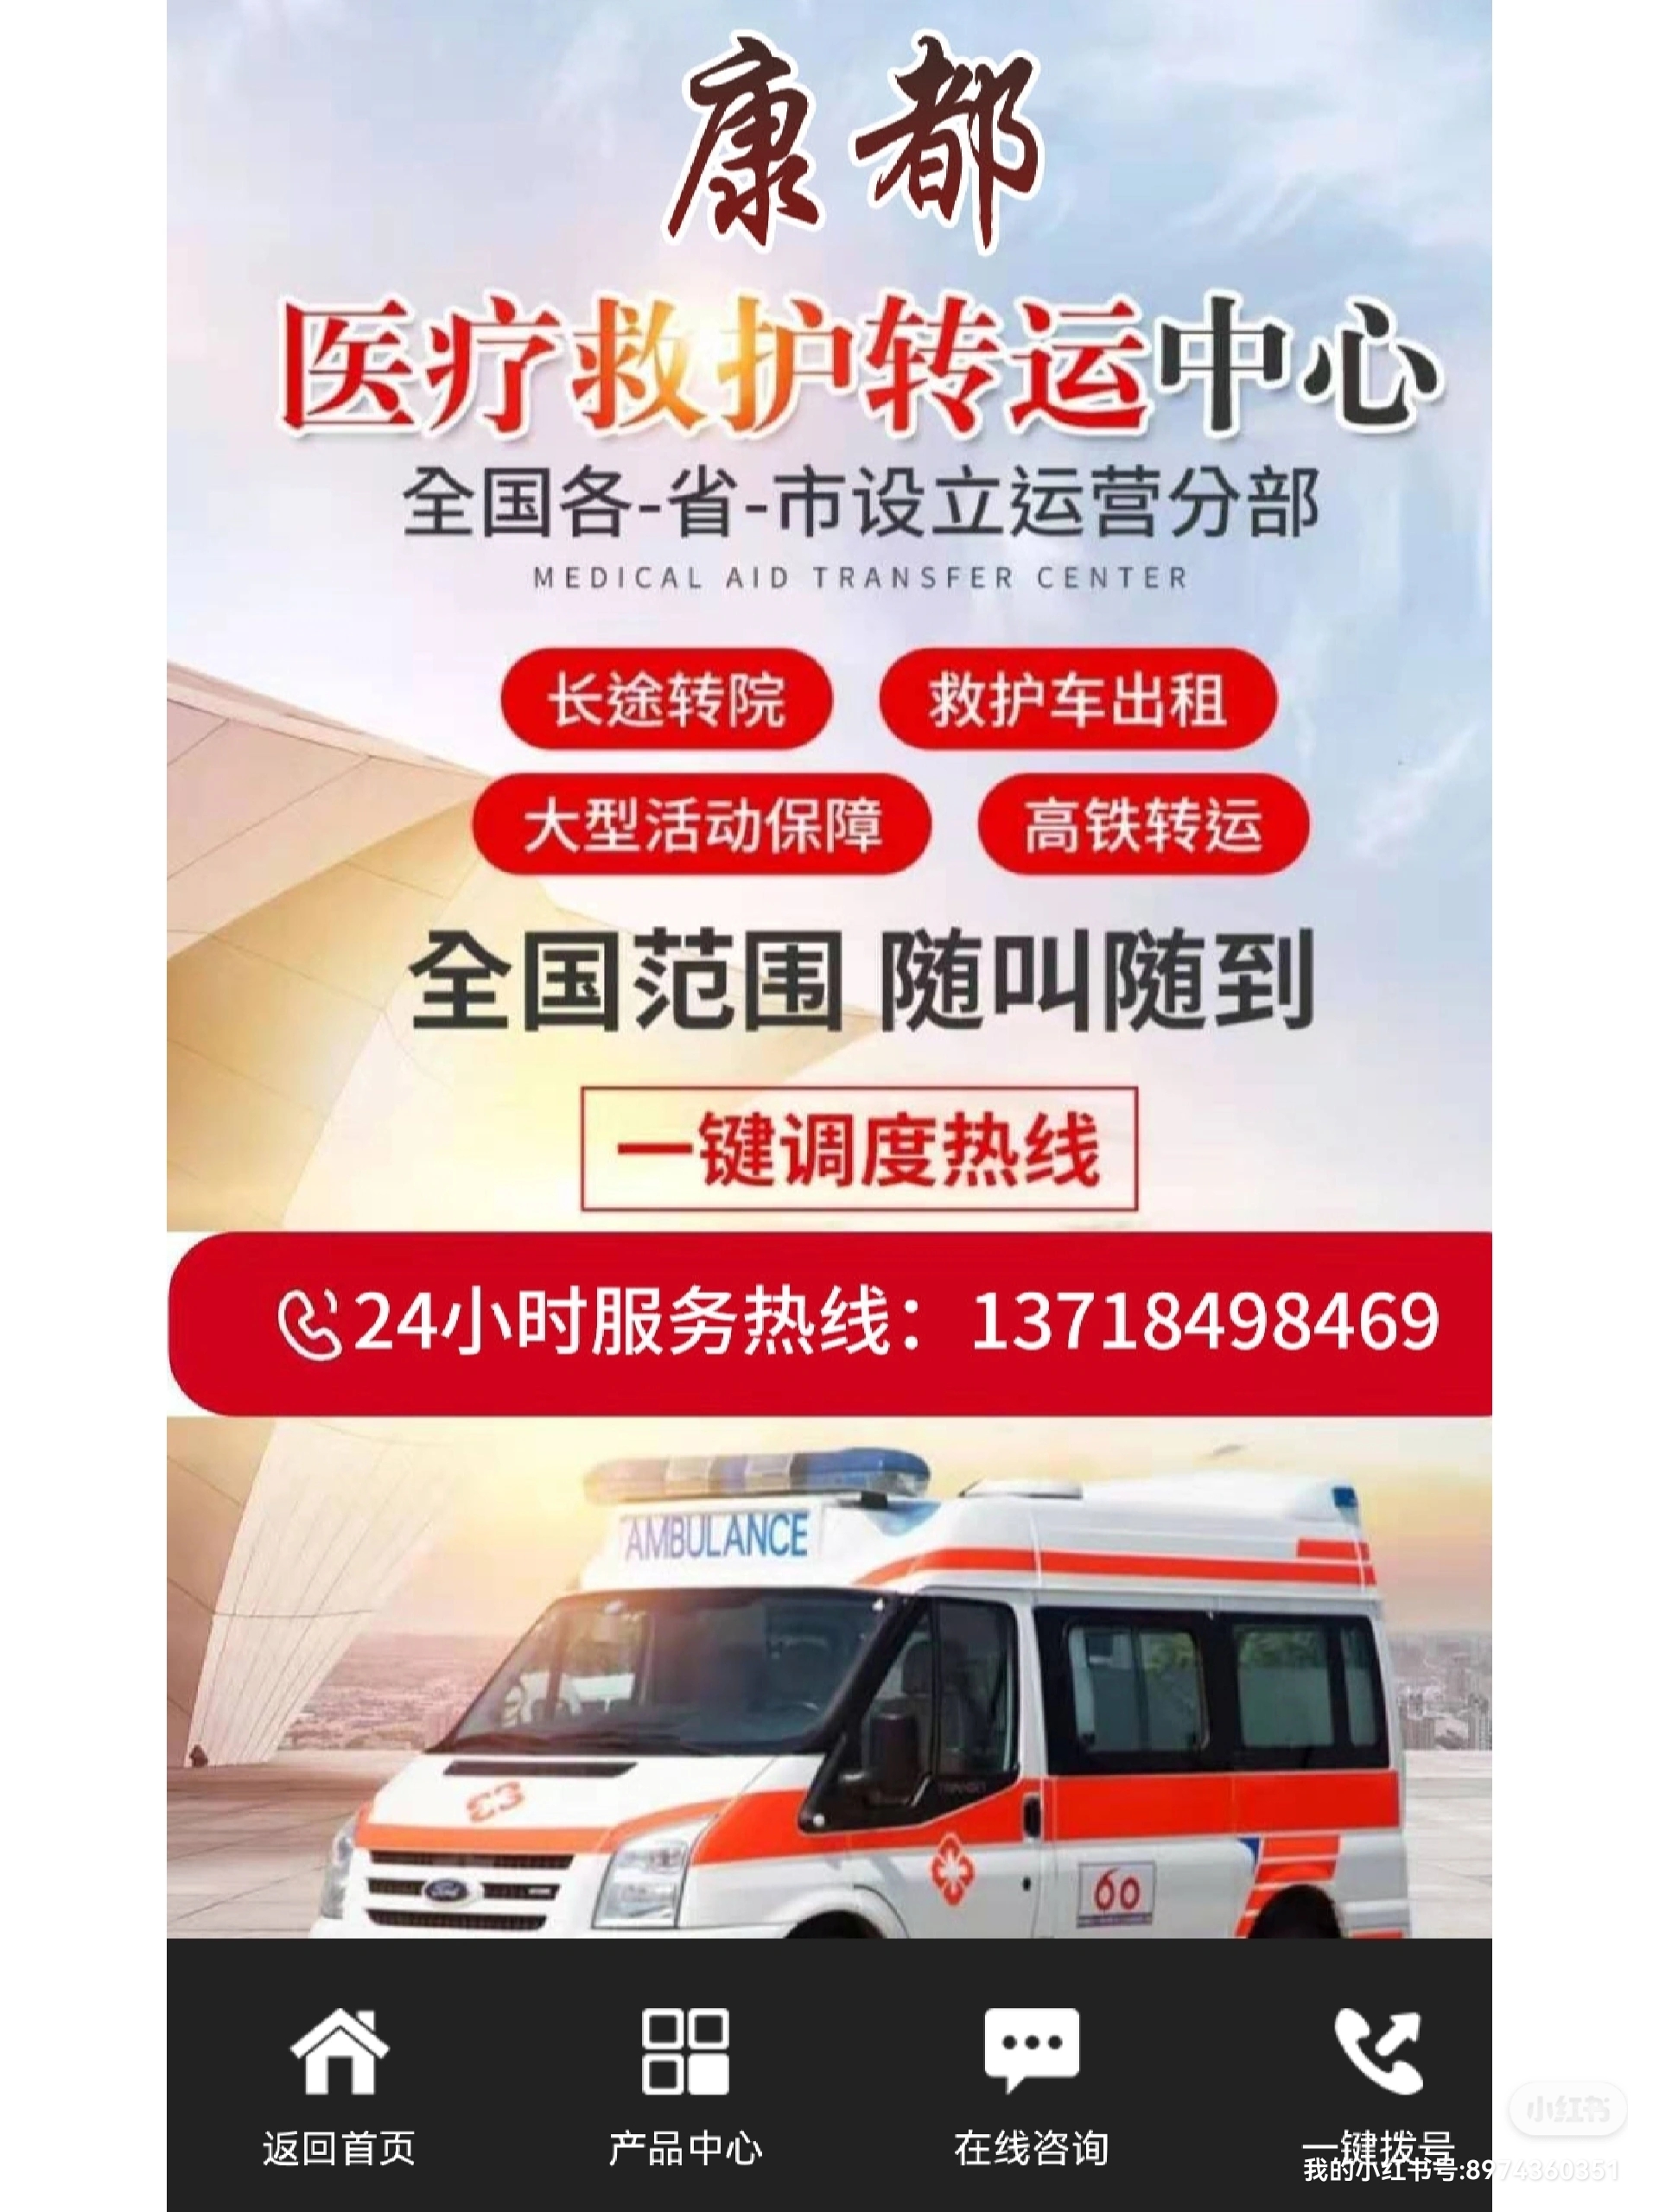 北京304医院救护车出租